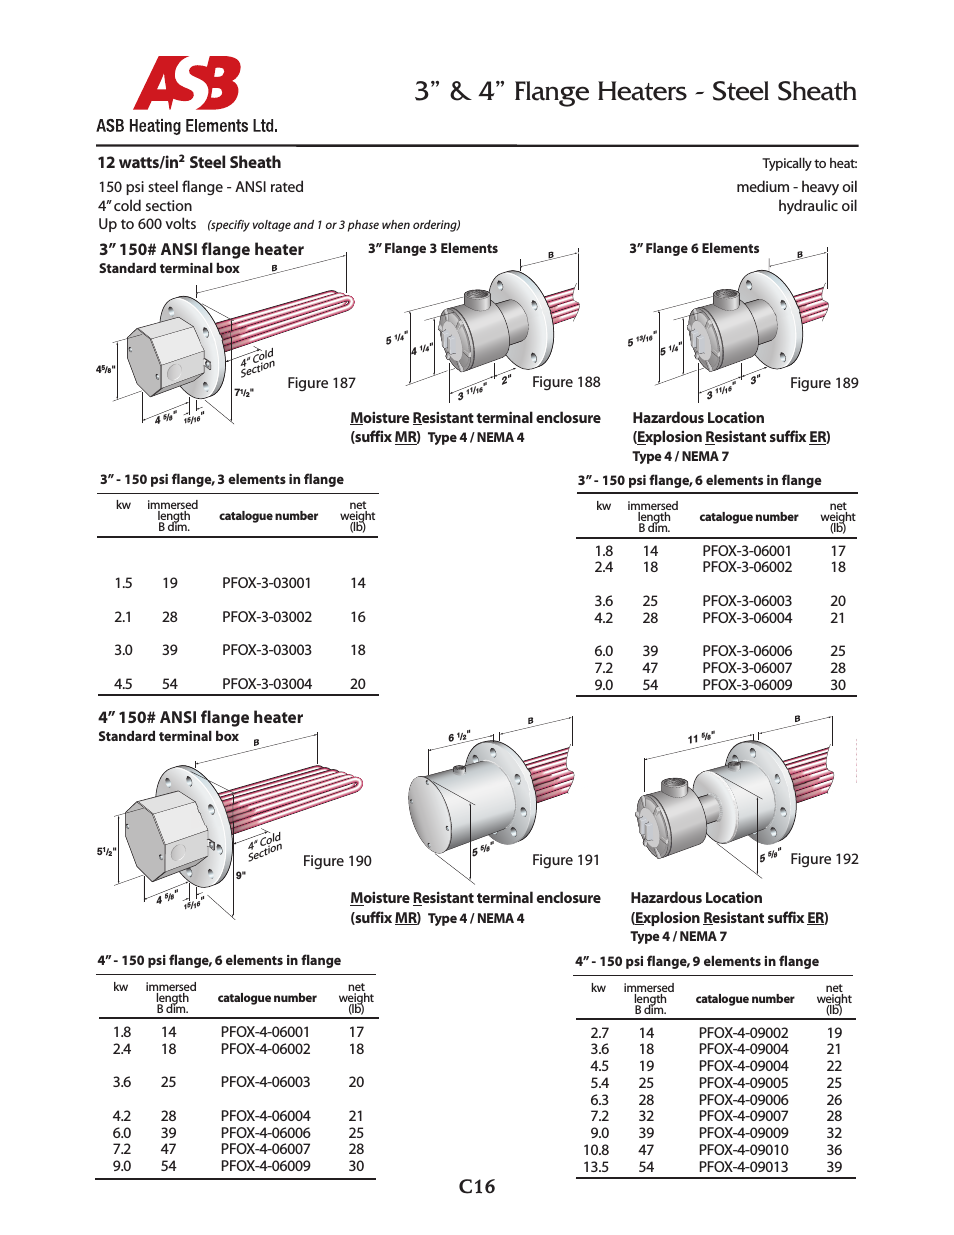 3” & 4” Flange Heaters - 12 watts - Steel Sheath